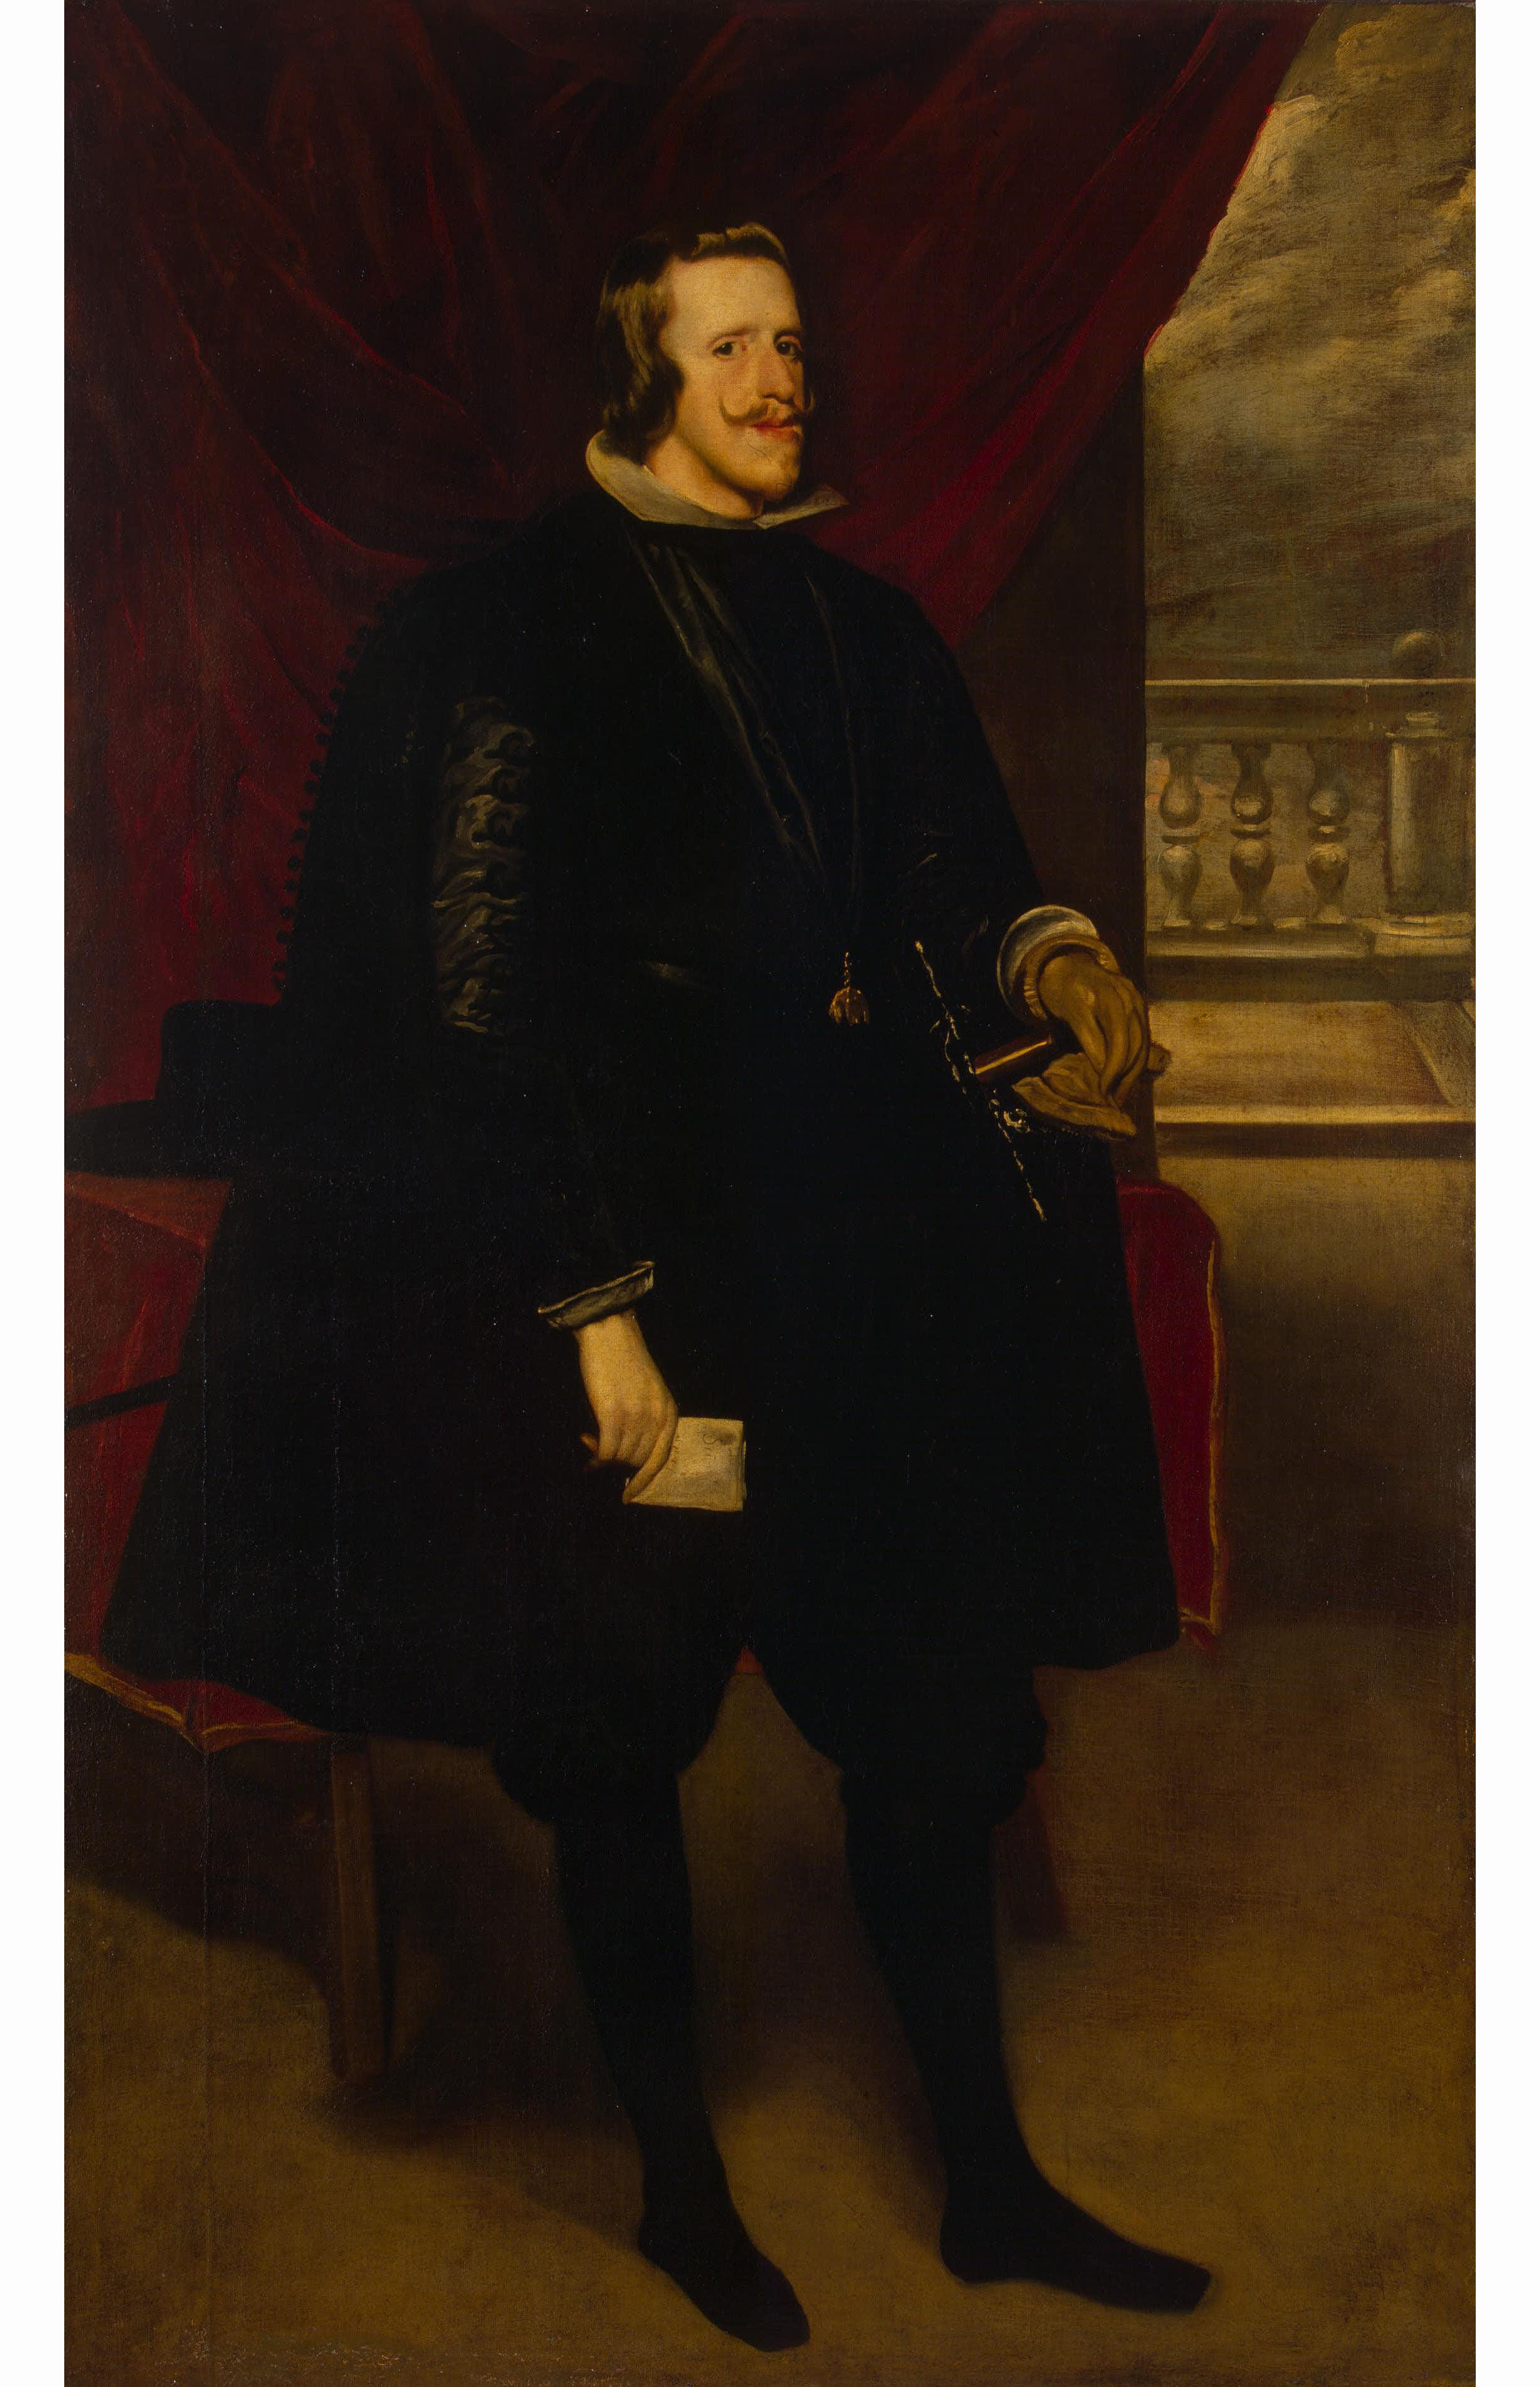 Диего Веласкес де Сильва и мастерская. "Портрет испанского короля Филиппа IV". Около 1638. Эрмитаж, Санкт-Петербург.